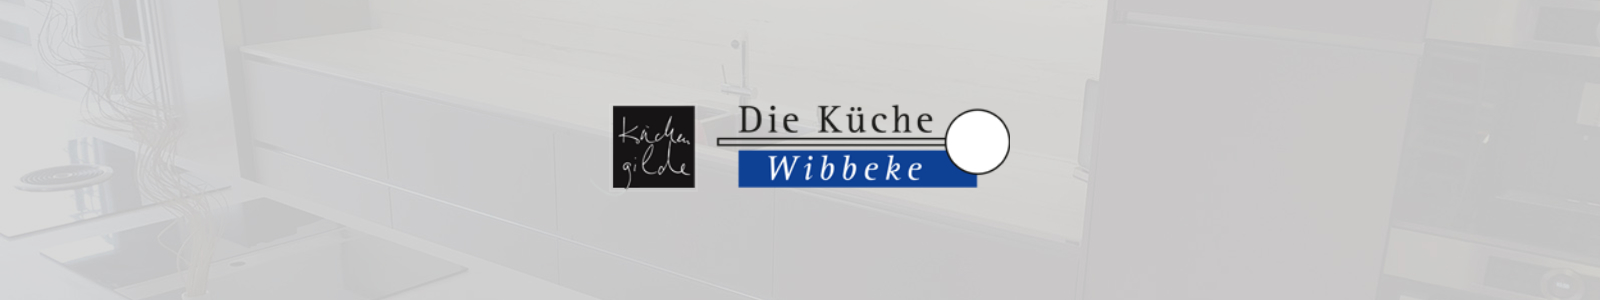 Die Küche Wibbeke In Dortmund Küchenstudio Küchenplanung